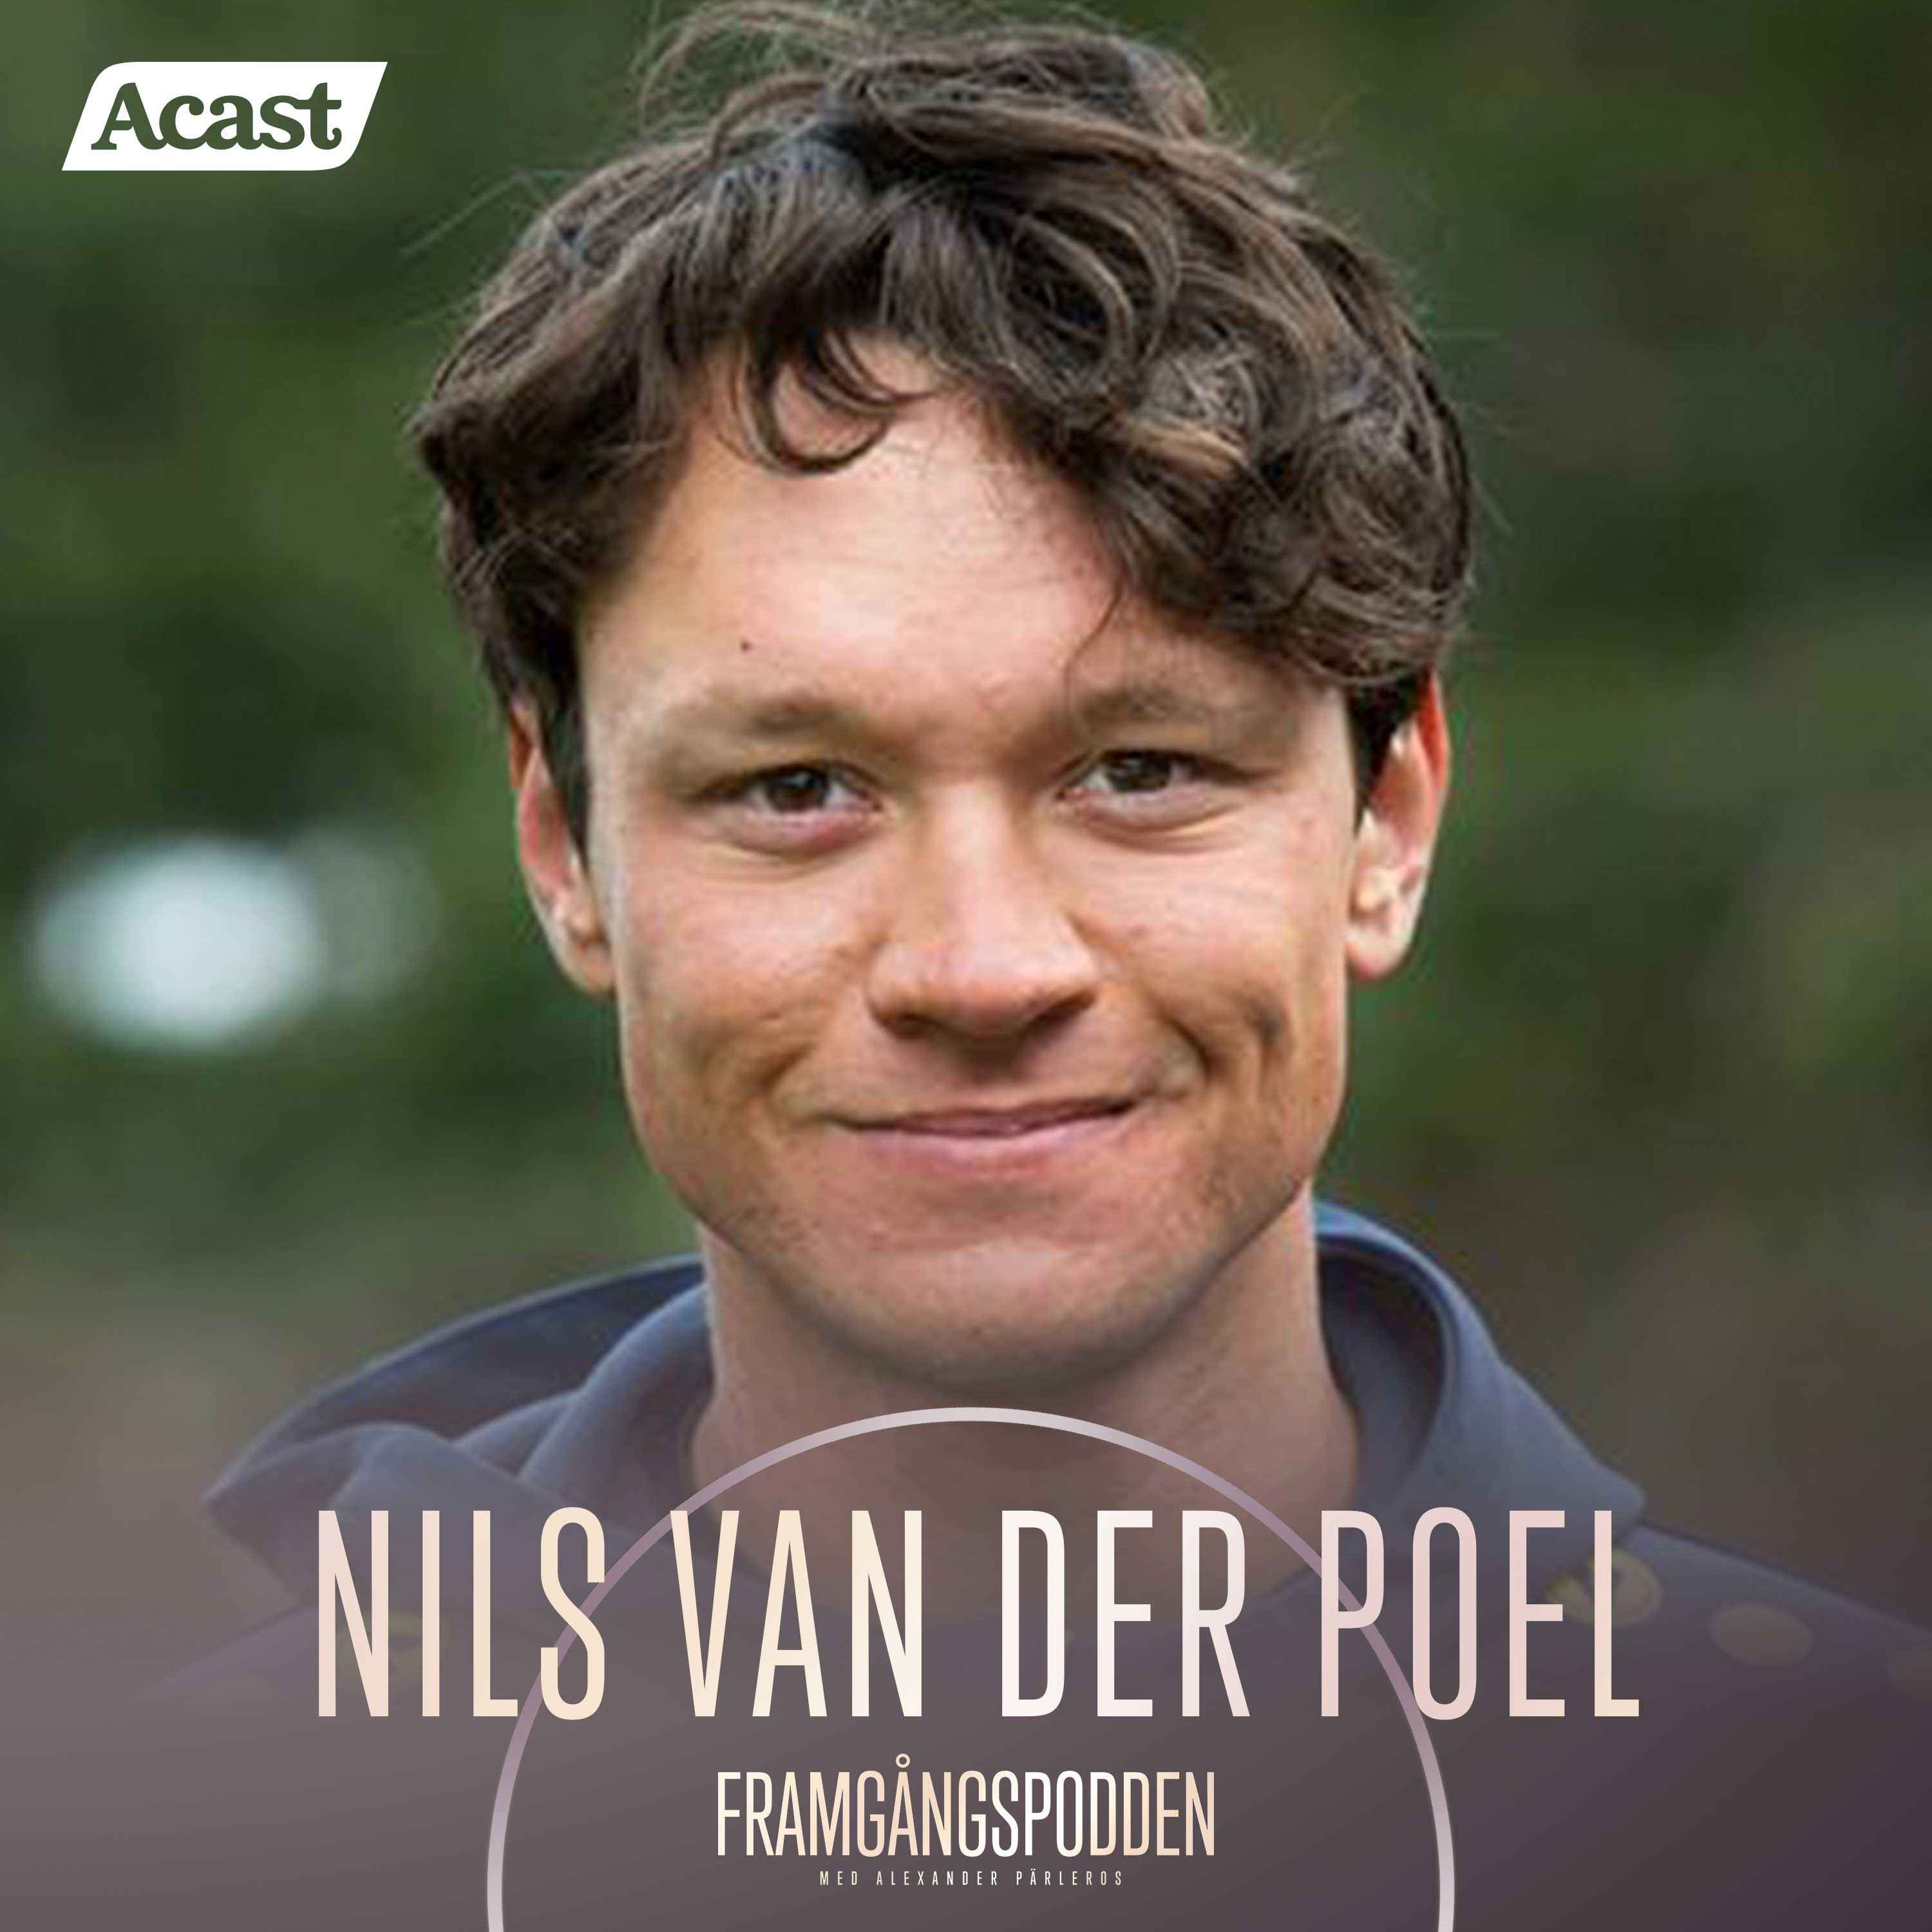 600. Nils van der Poel - "Framgång är förknippat med uppoffringar och misslyckanden", Original